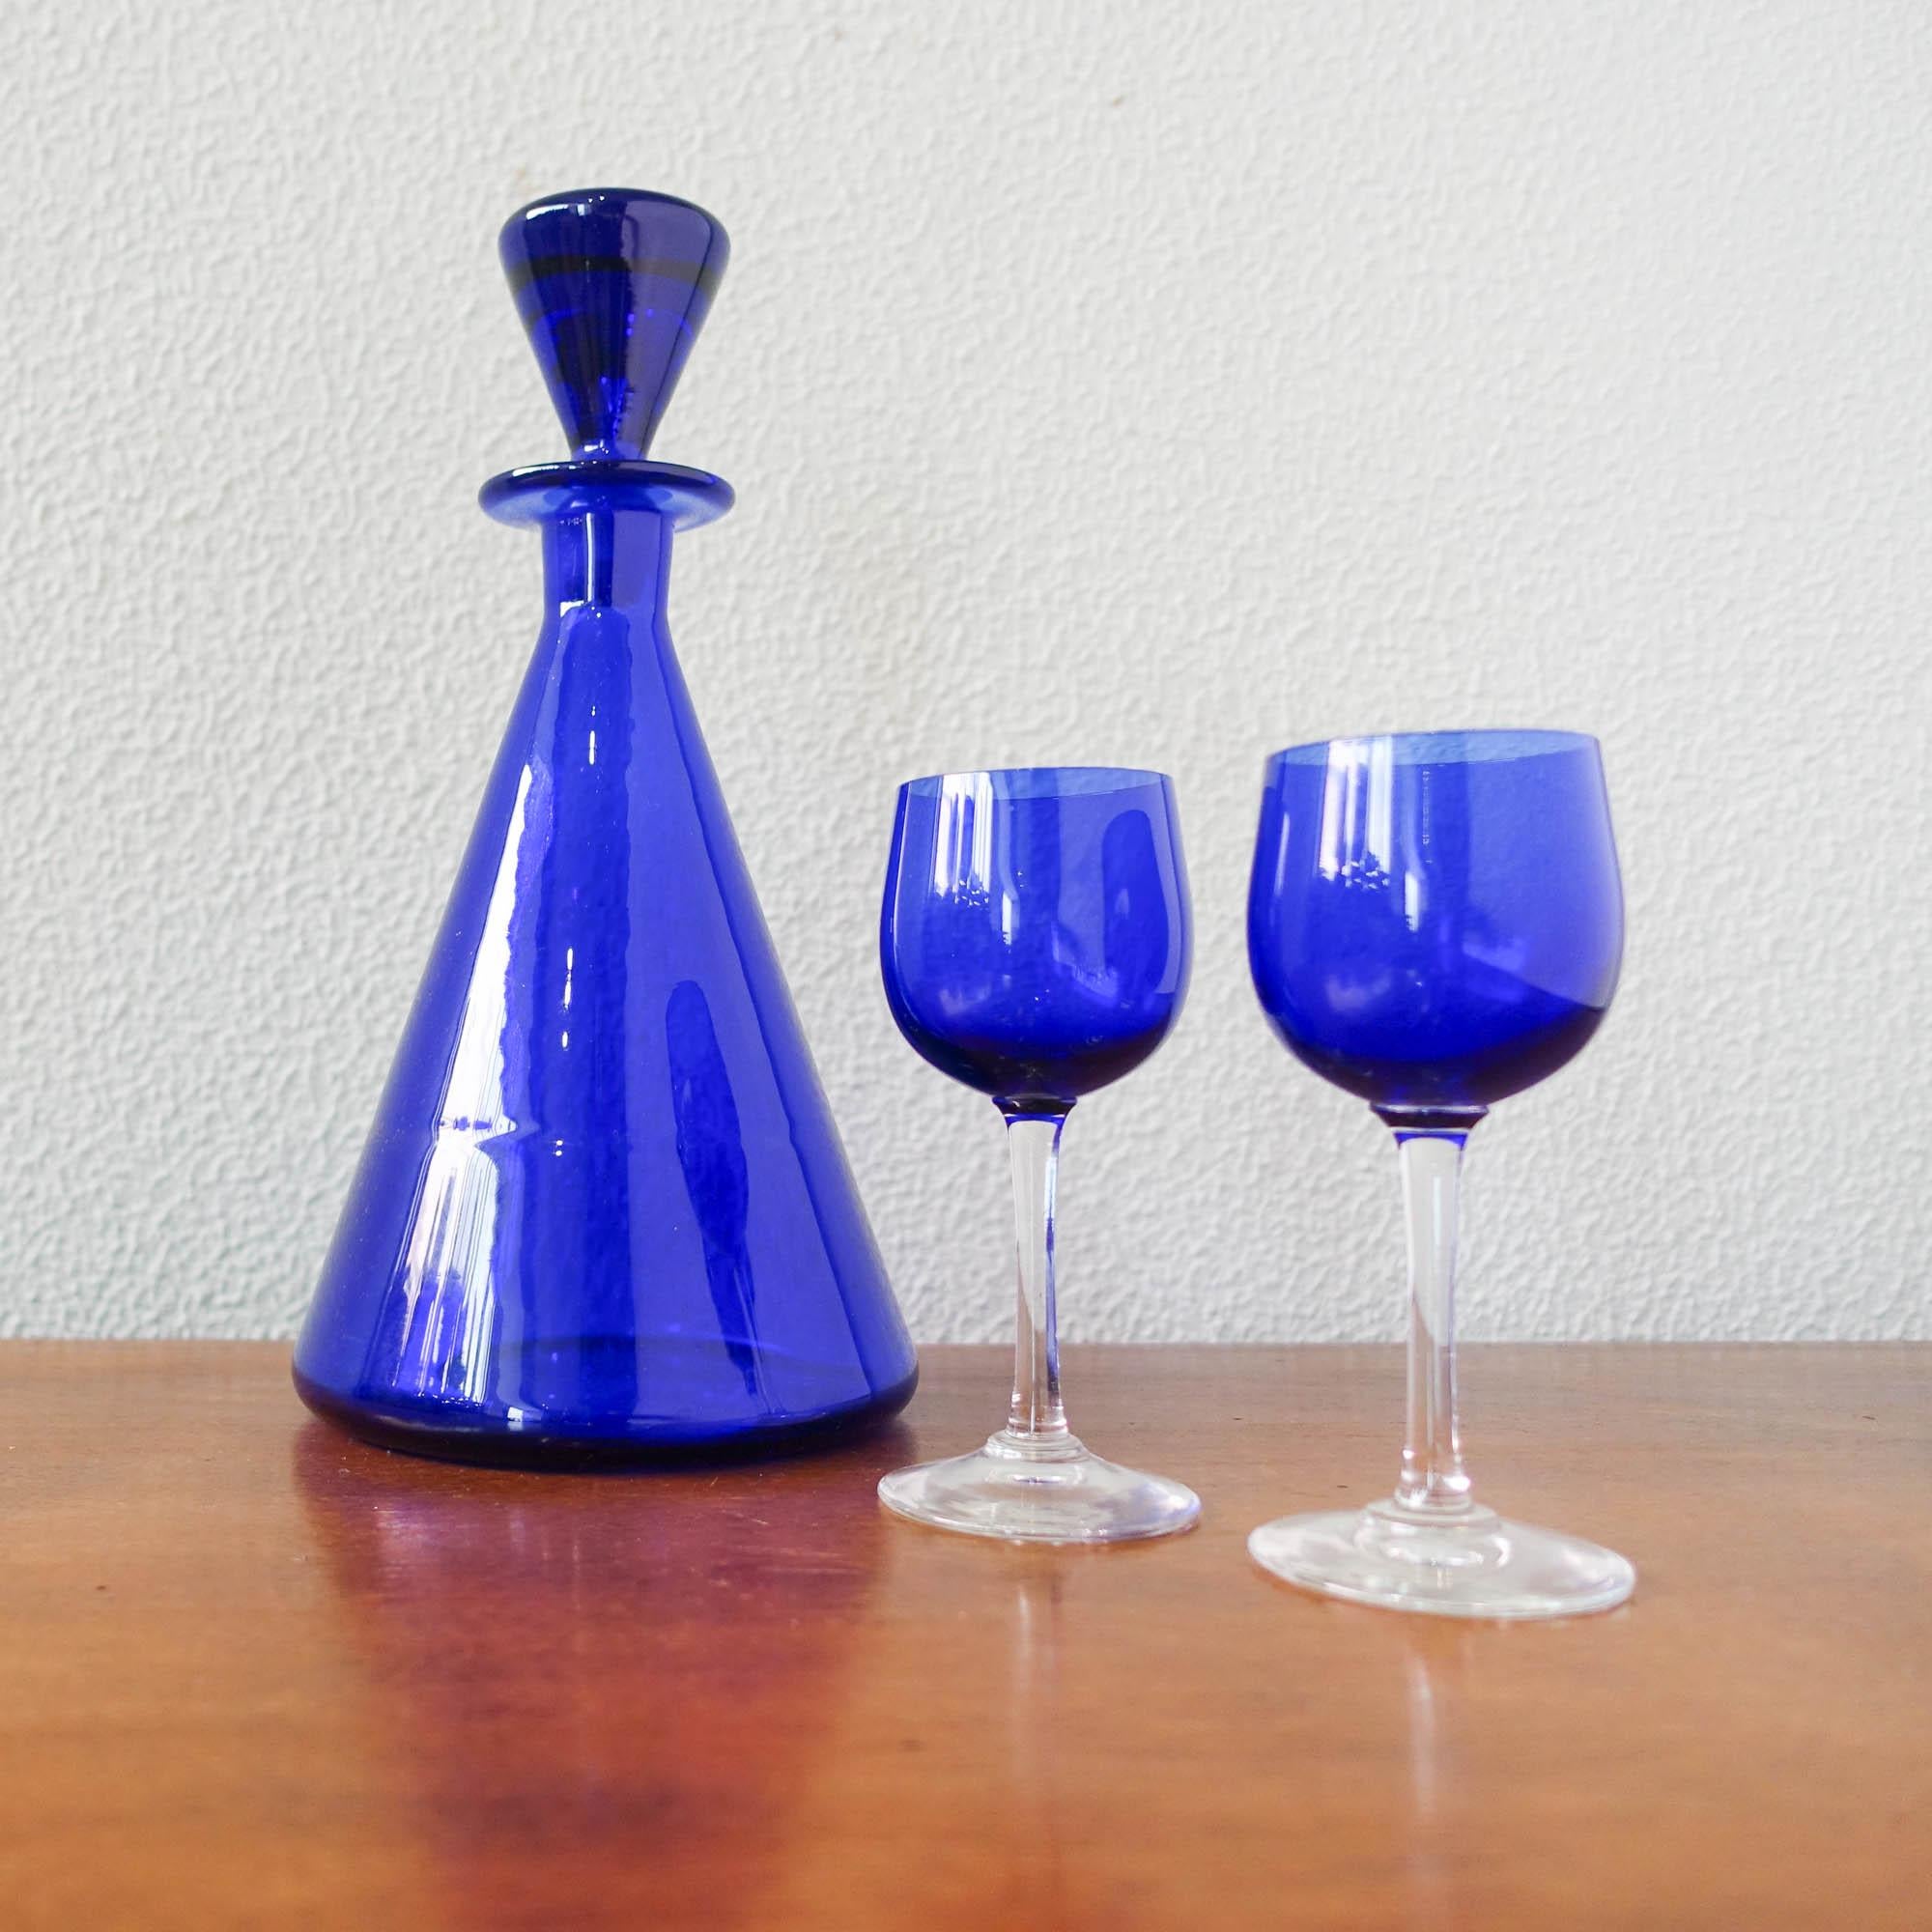 Dieses Set aus Flasche und zwei Gläsern wurde von Marinha Grande in Portugal in den 1950er Jahren entworfen und hergestellt. Die Flasche ist ganz aus kobaltblauem Glas, die Gläser sind kobaltblau mit transparentem Boden und Stiel. In ursprünglichen